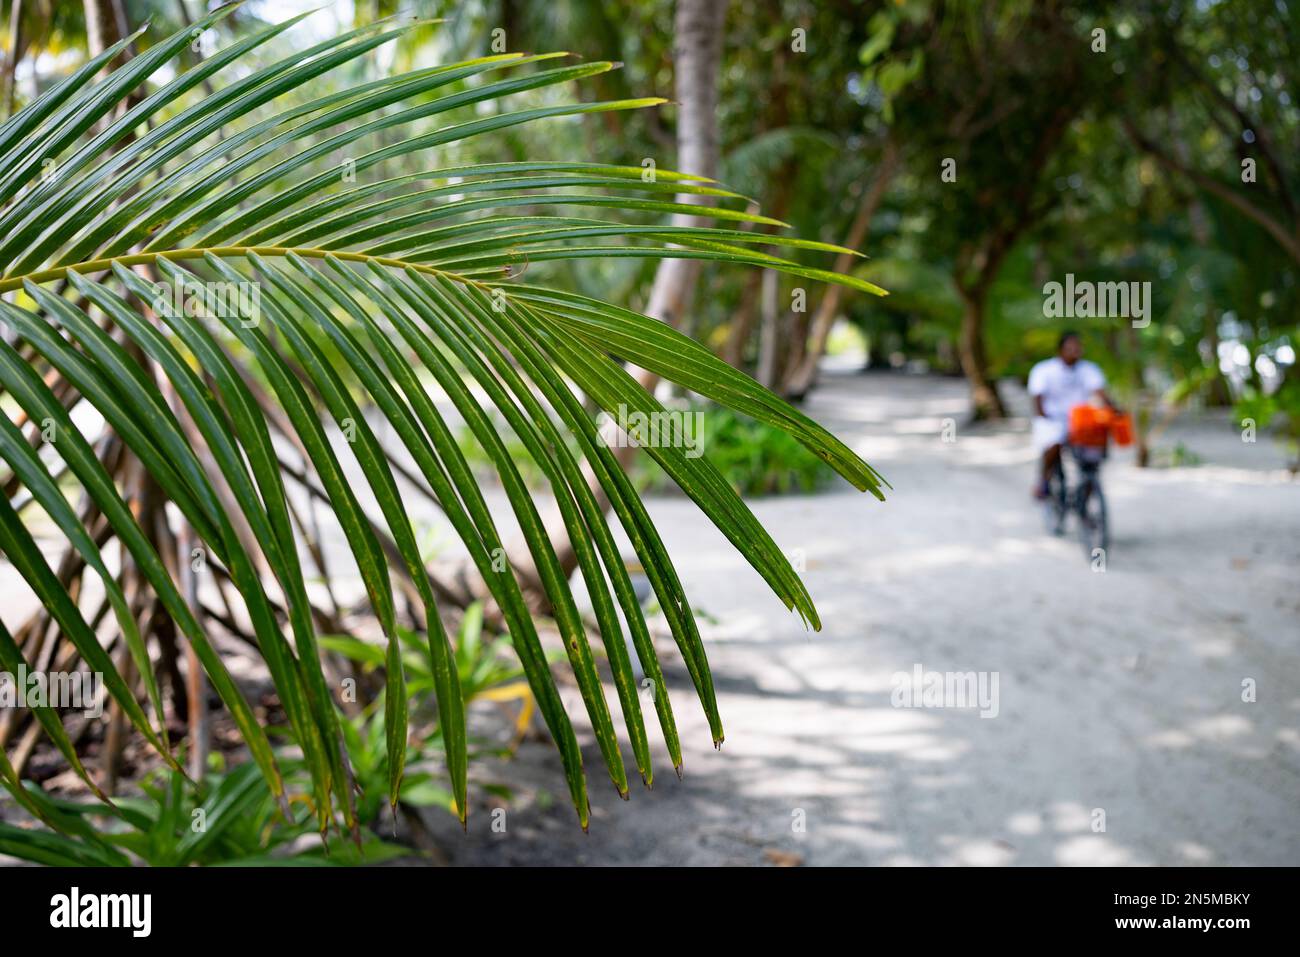 Maldive vista - foglia di palma e la gente nel paesaggio, atollo Rasdhoo, le isole tropicali Maldive, Asia Foto Stock